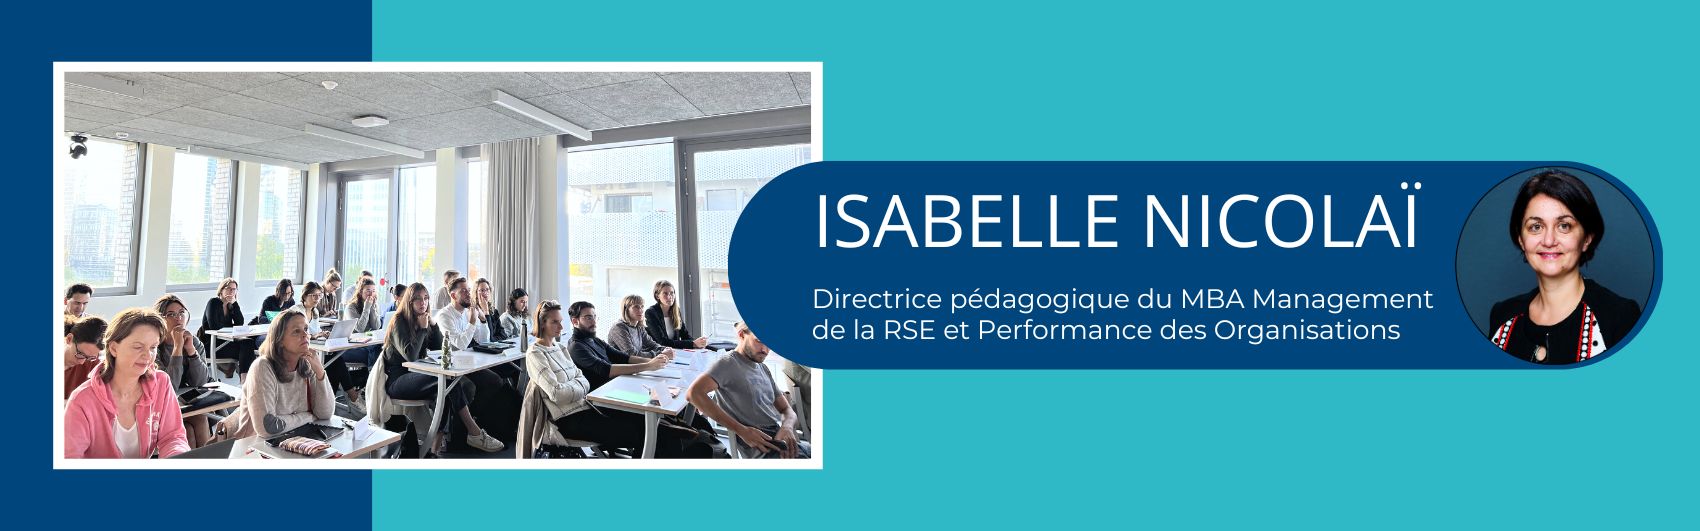 Article MBA Management de la RSE et Performance des Organisations : 5 questions à la directrice